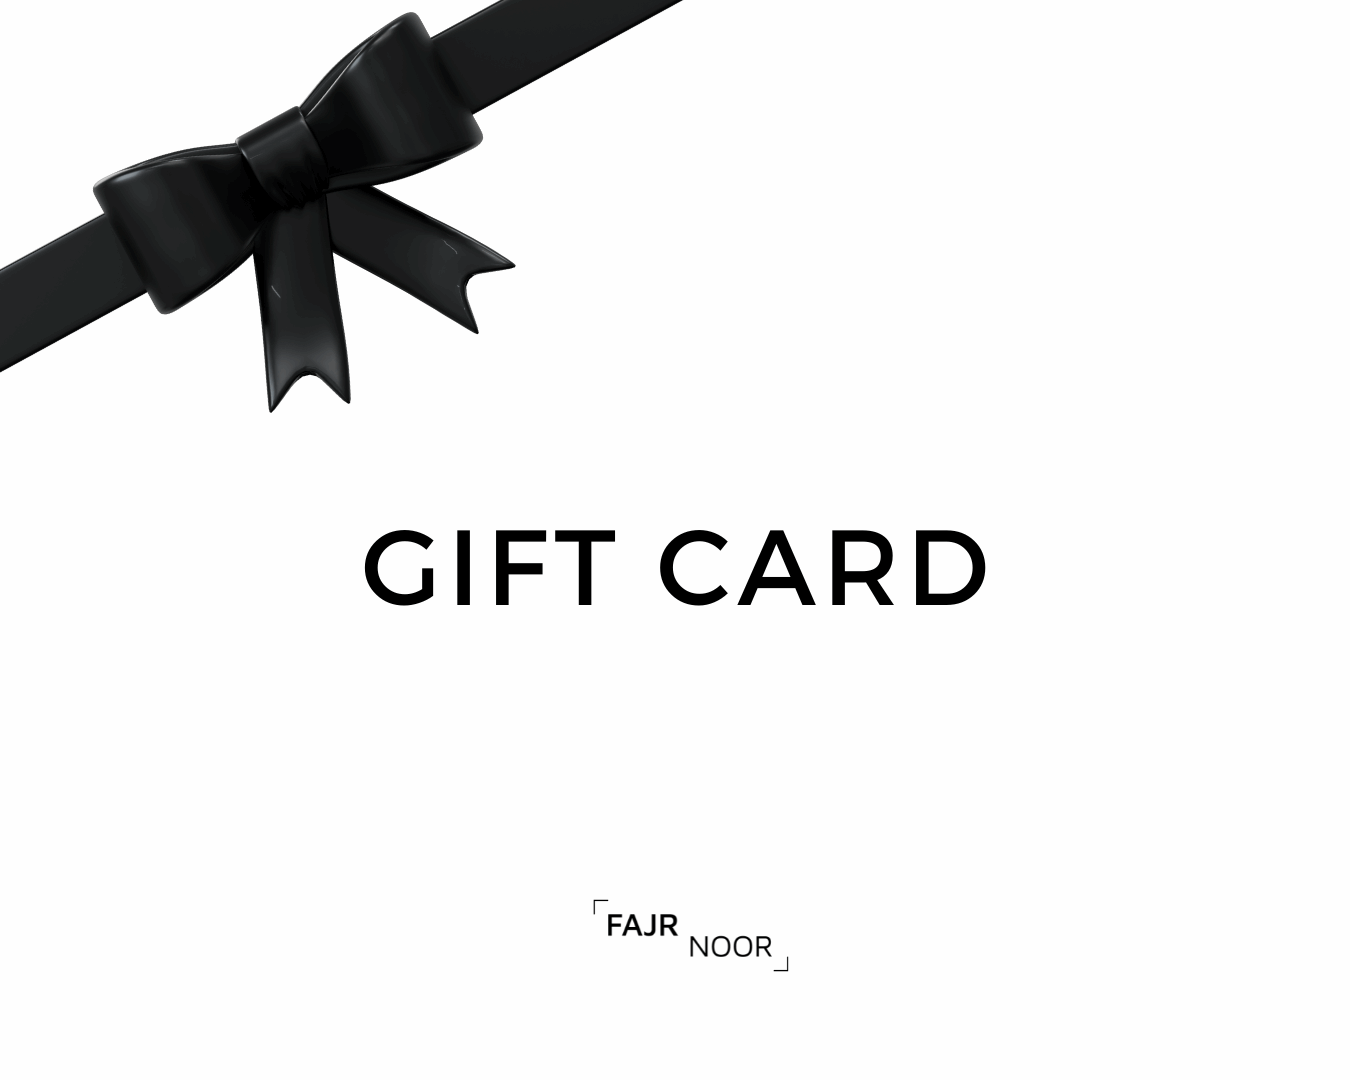 Fajr Noor Gift Card - Gift Card - Fajr Noor